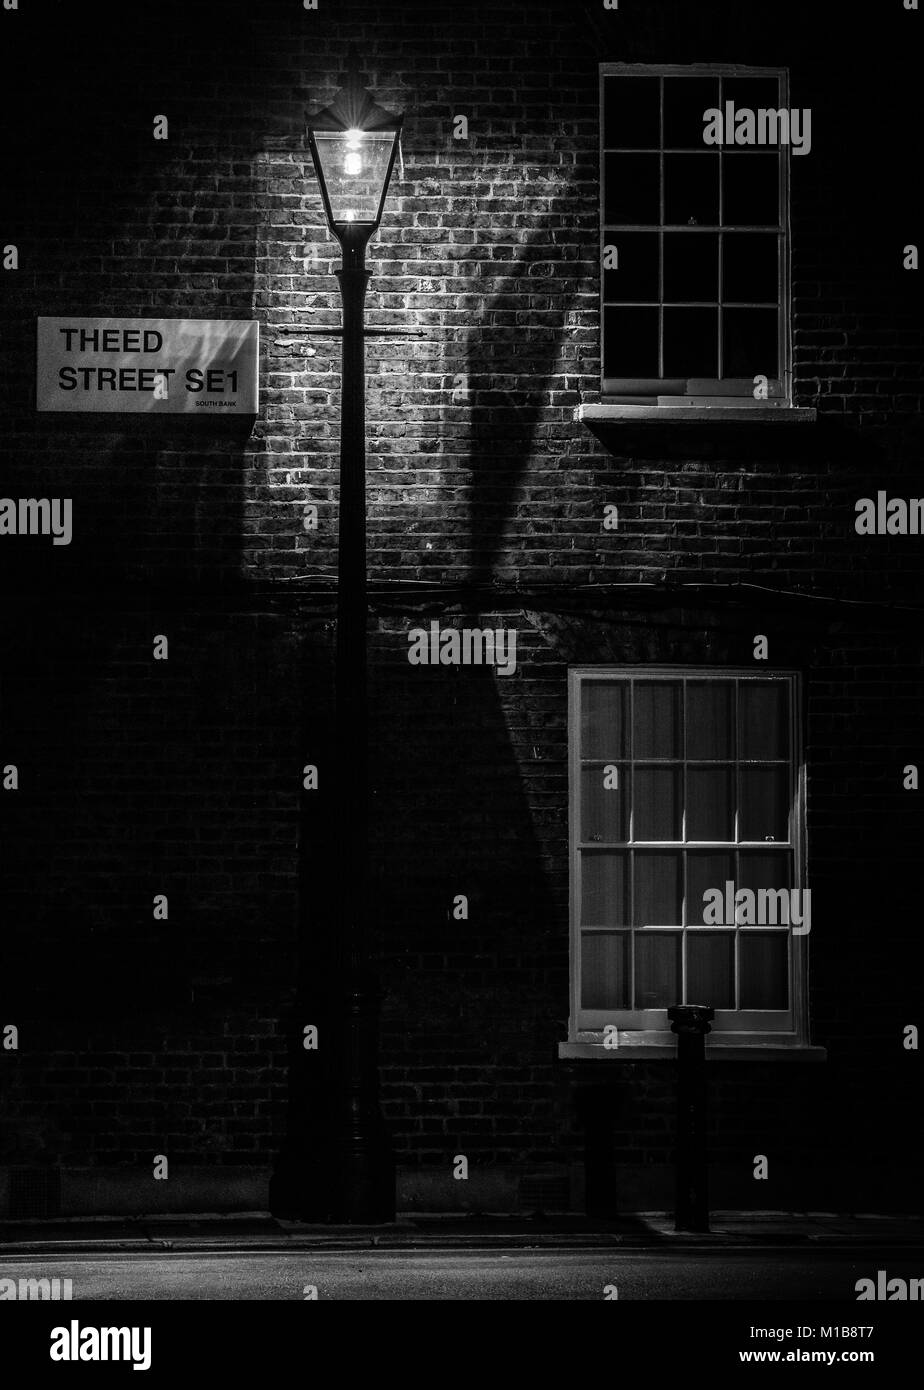 Theed Street, Waterloo, London, Regno Unito durante la notte con una vecchia strada lampada illumina il nome strada segno Foto Stock